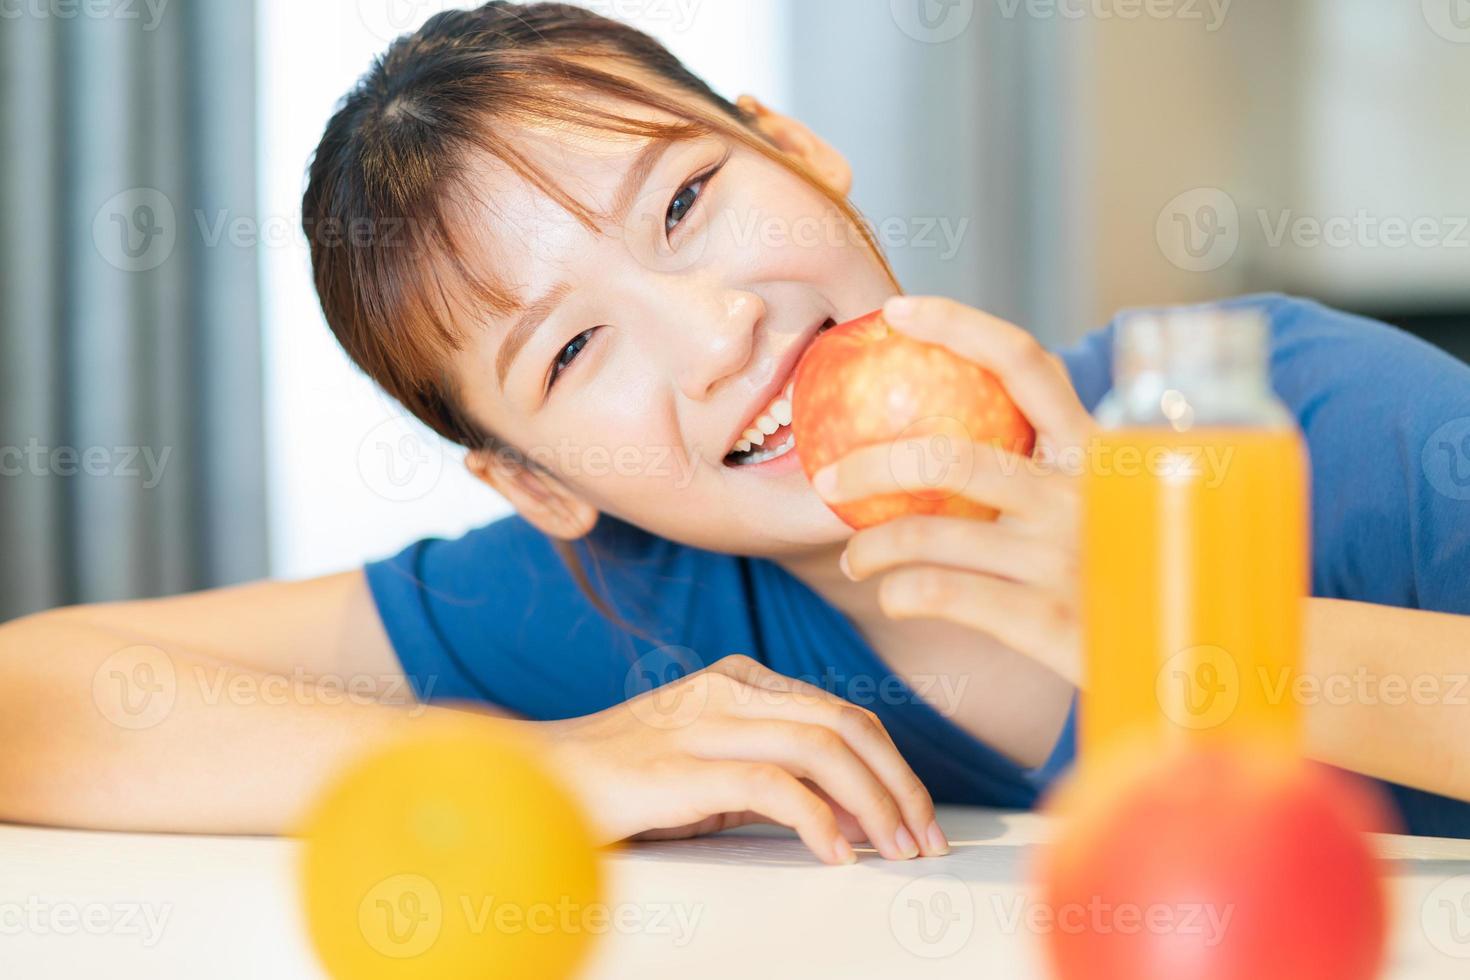 en ung asiatisk kvinna som äter frukost med frukt i sitt kök foto